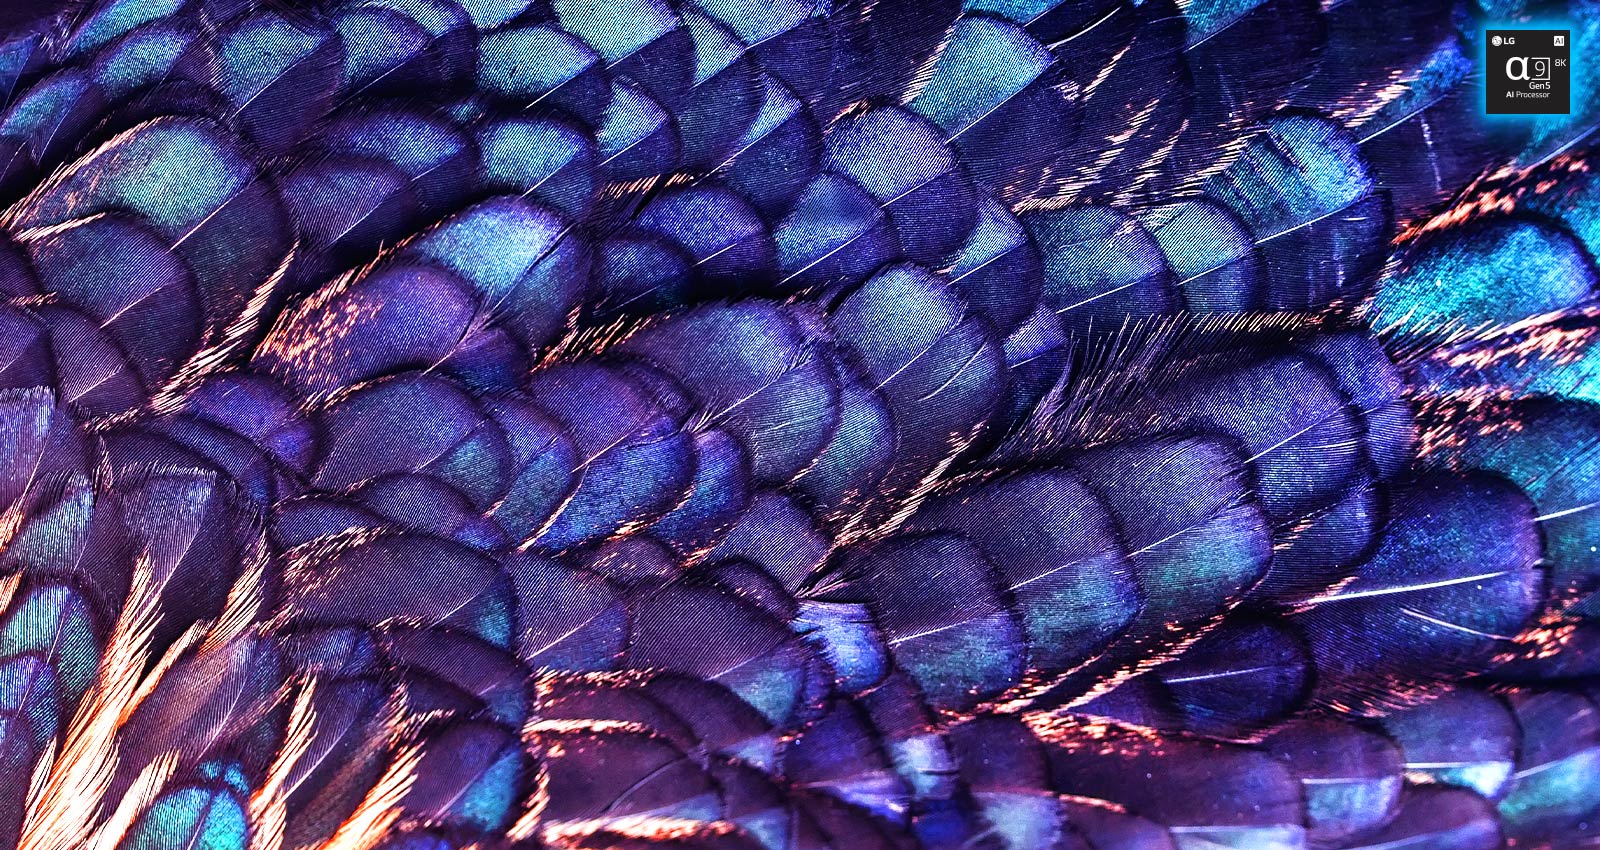 Kuva purppuranvärisen linnun kirkkaasta ja värikkäästä höyhenpeitteestä. Kuva on jaettu kahteen osaan – yläosa on eloisampi ja siinä on teksti "AI 8K upscaling" sekä prosessorin kuva, ja alempi osa on vaaleampi.